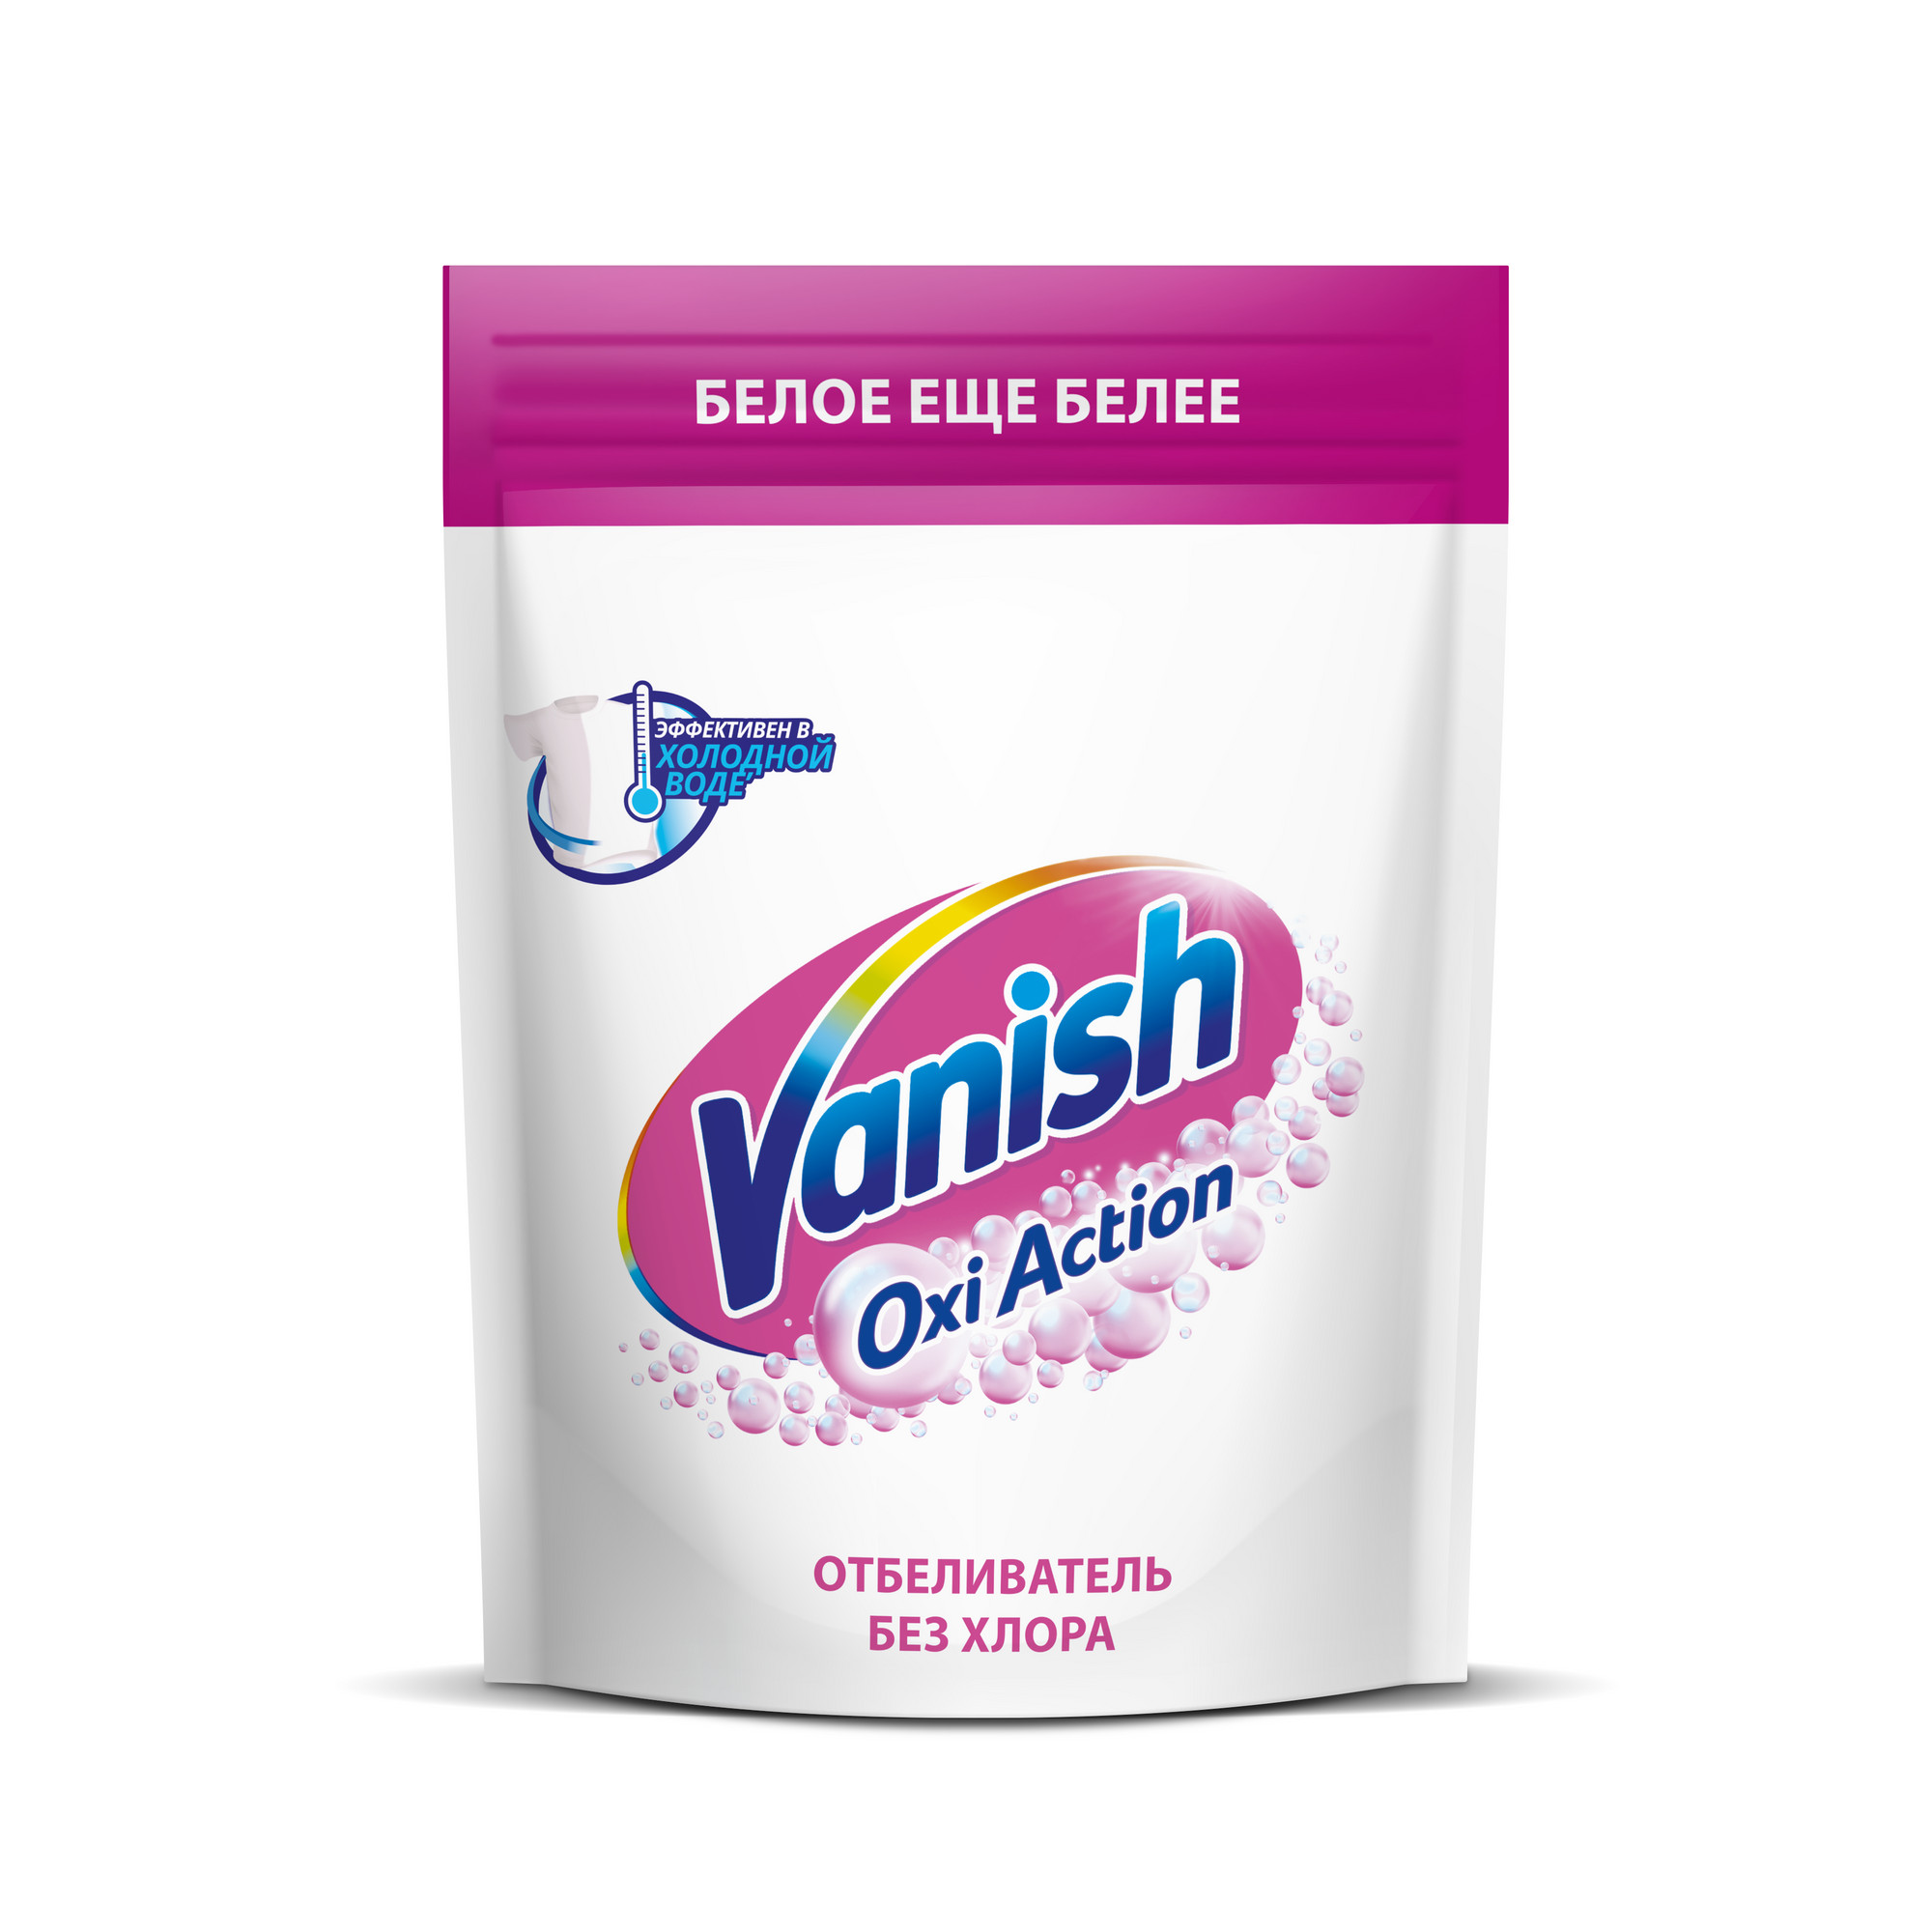 Пятновыводитель Vanish Oxi Action Кристальная белизна для тканей порошкообразный 500 г пятновыводитель vanish oxi action кристальная белизна с отбеливателем 450 мл